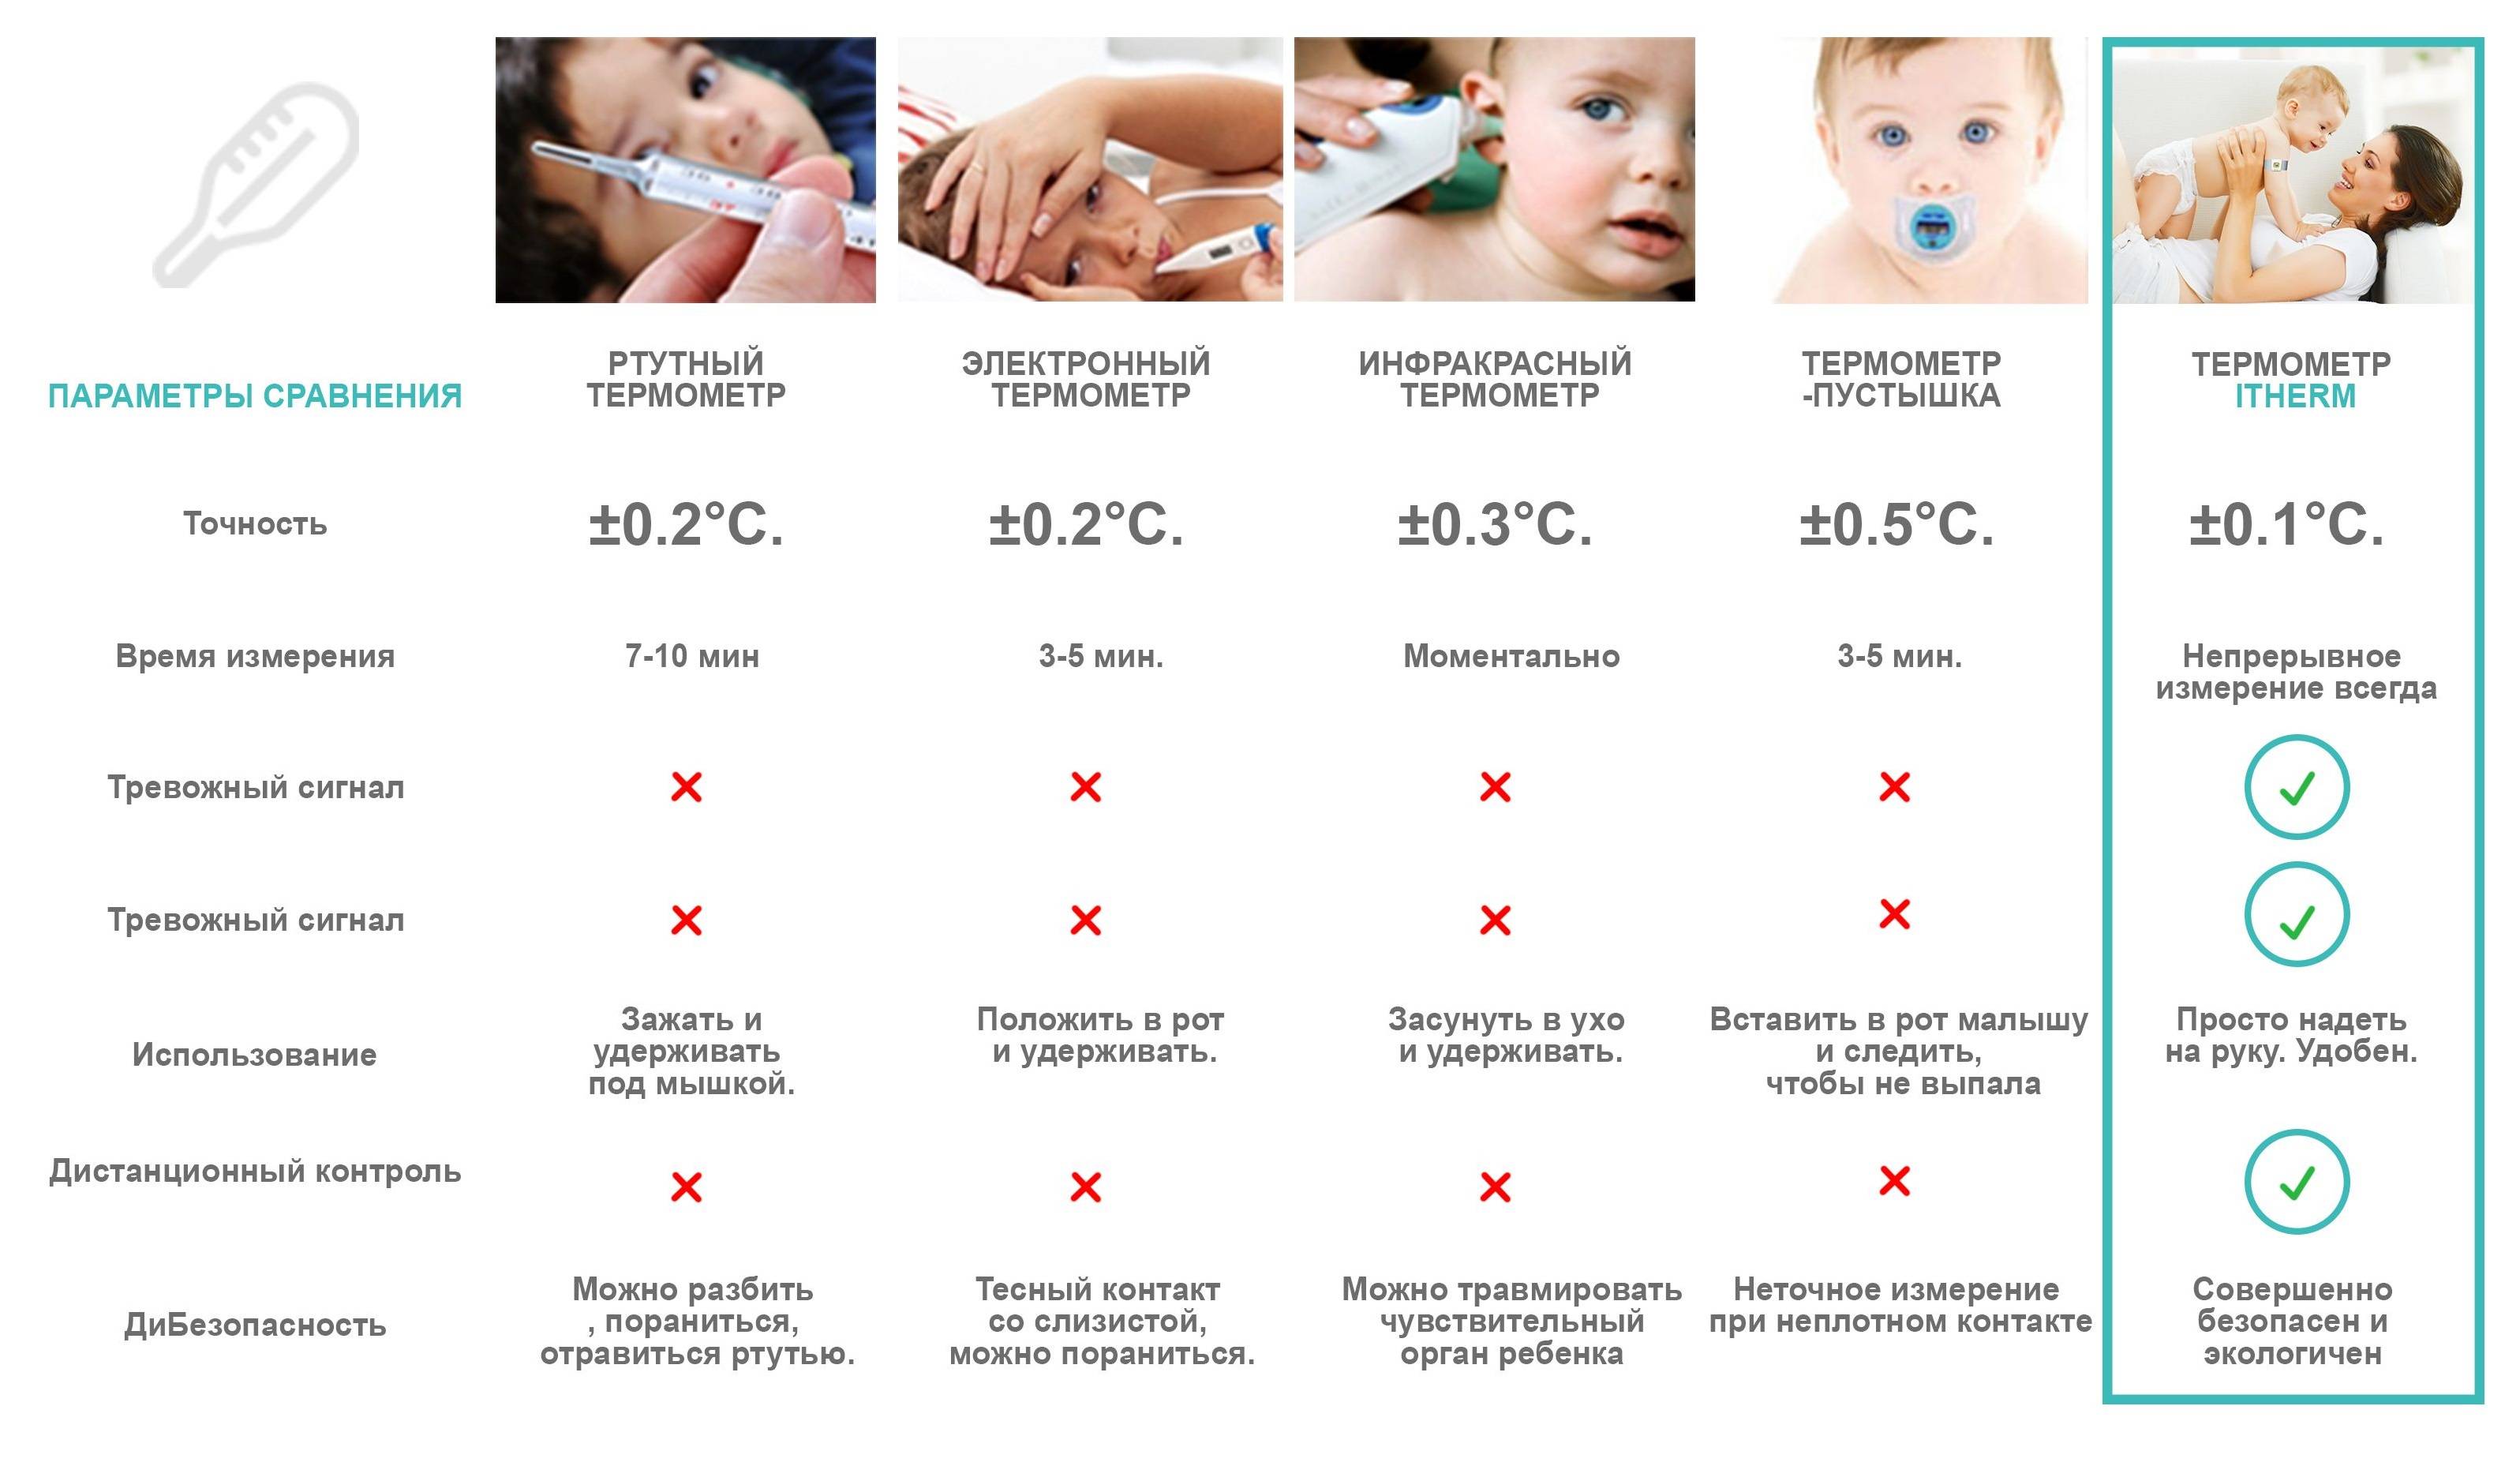 Высокая температура у ребенка - основные рекомендации для родителей